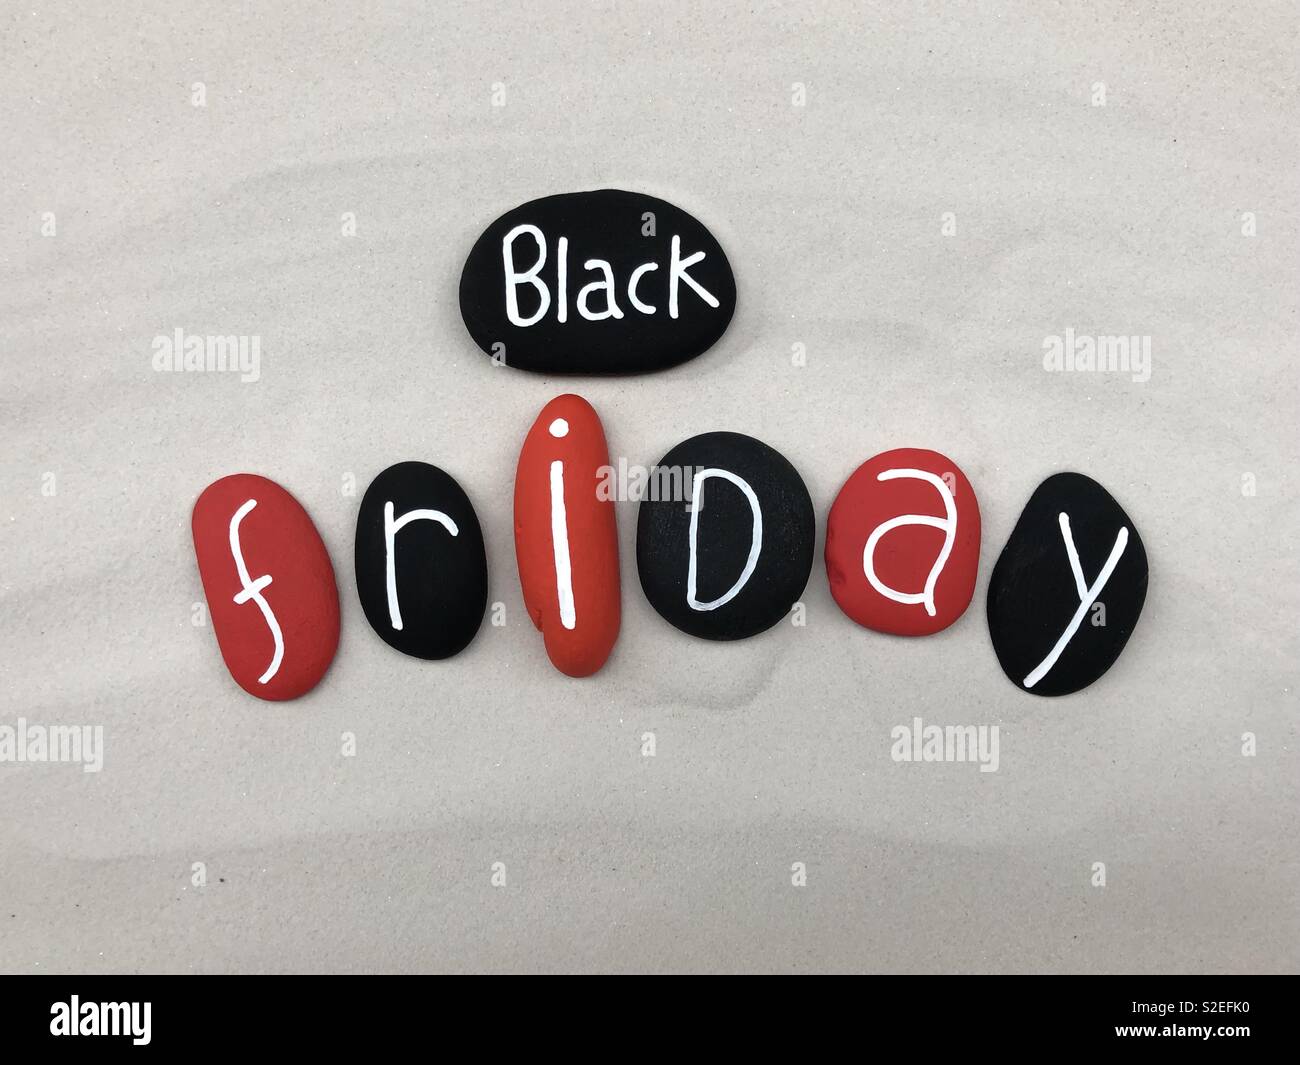 Venerdì nero con testo in bianco e nero e rosso con pietre colorate sulla sabbia bianca Foto Stock